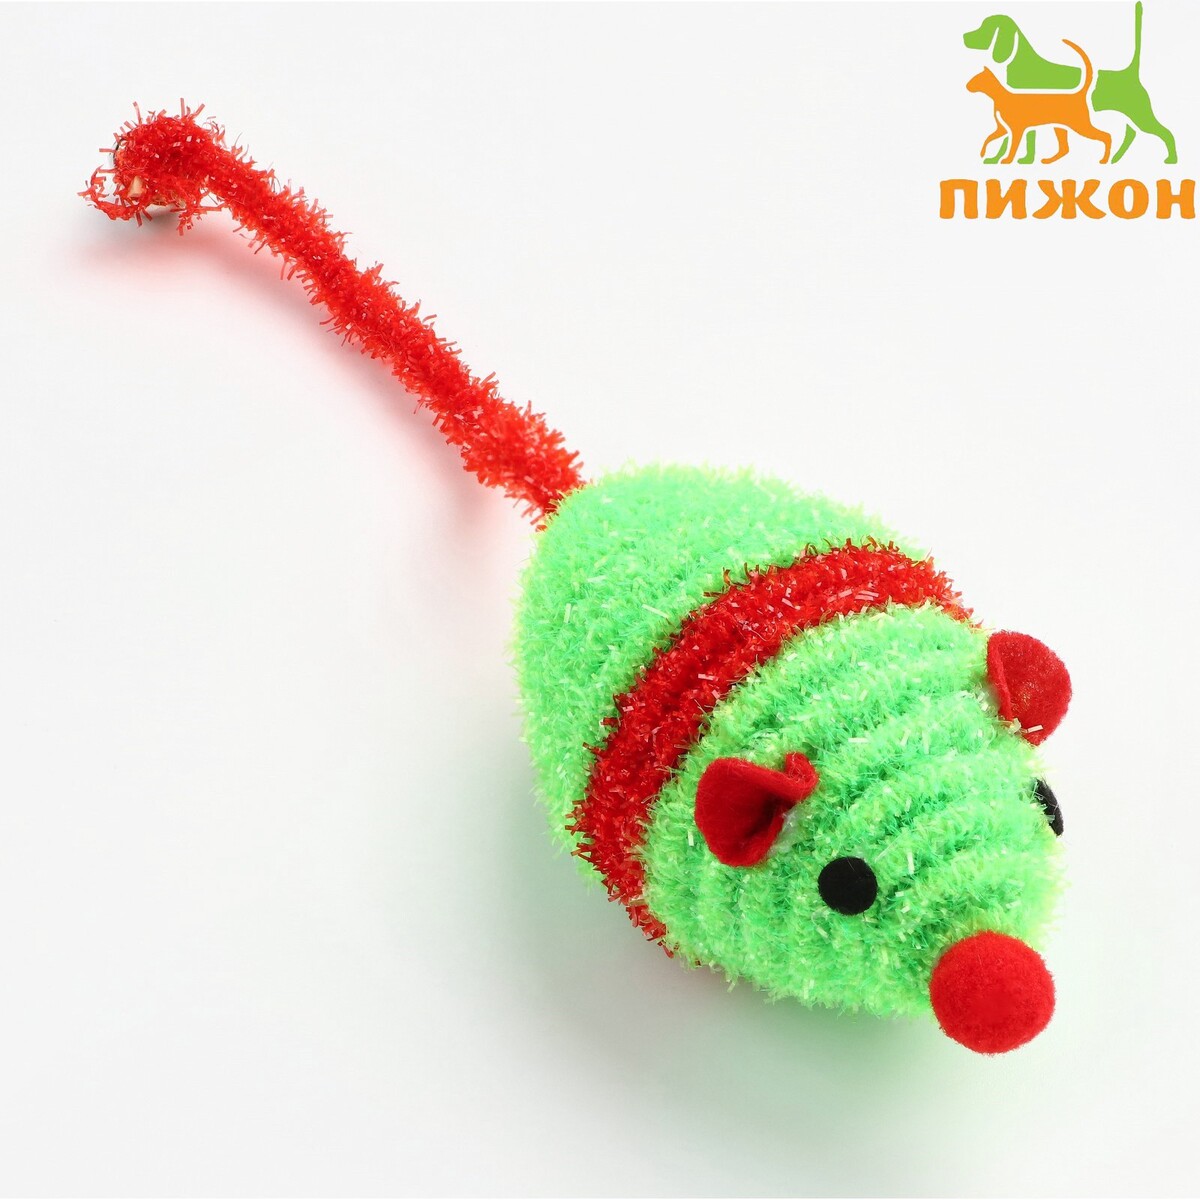 Мышь новогодняя погремушка с бубенчиком, 8 см, зеленая/красная мышь gmng xm001 8but